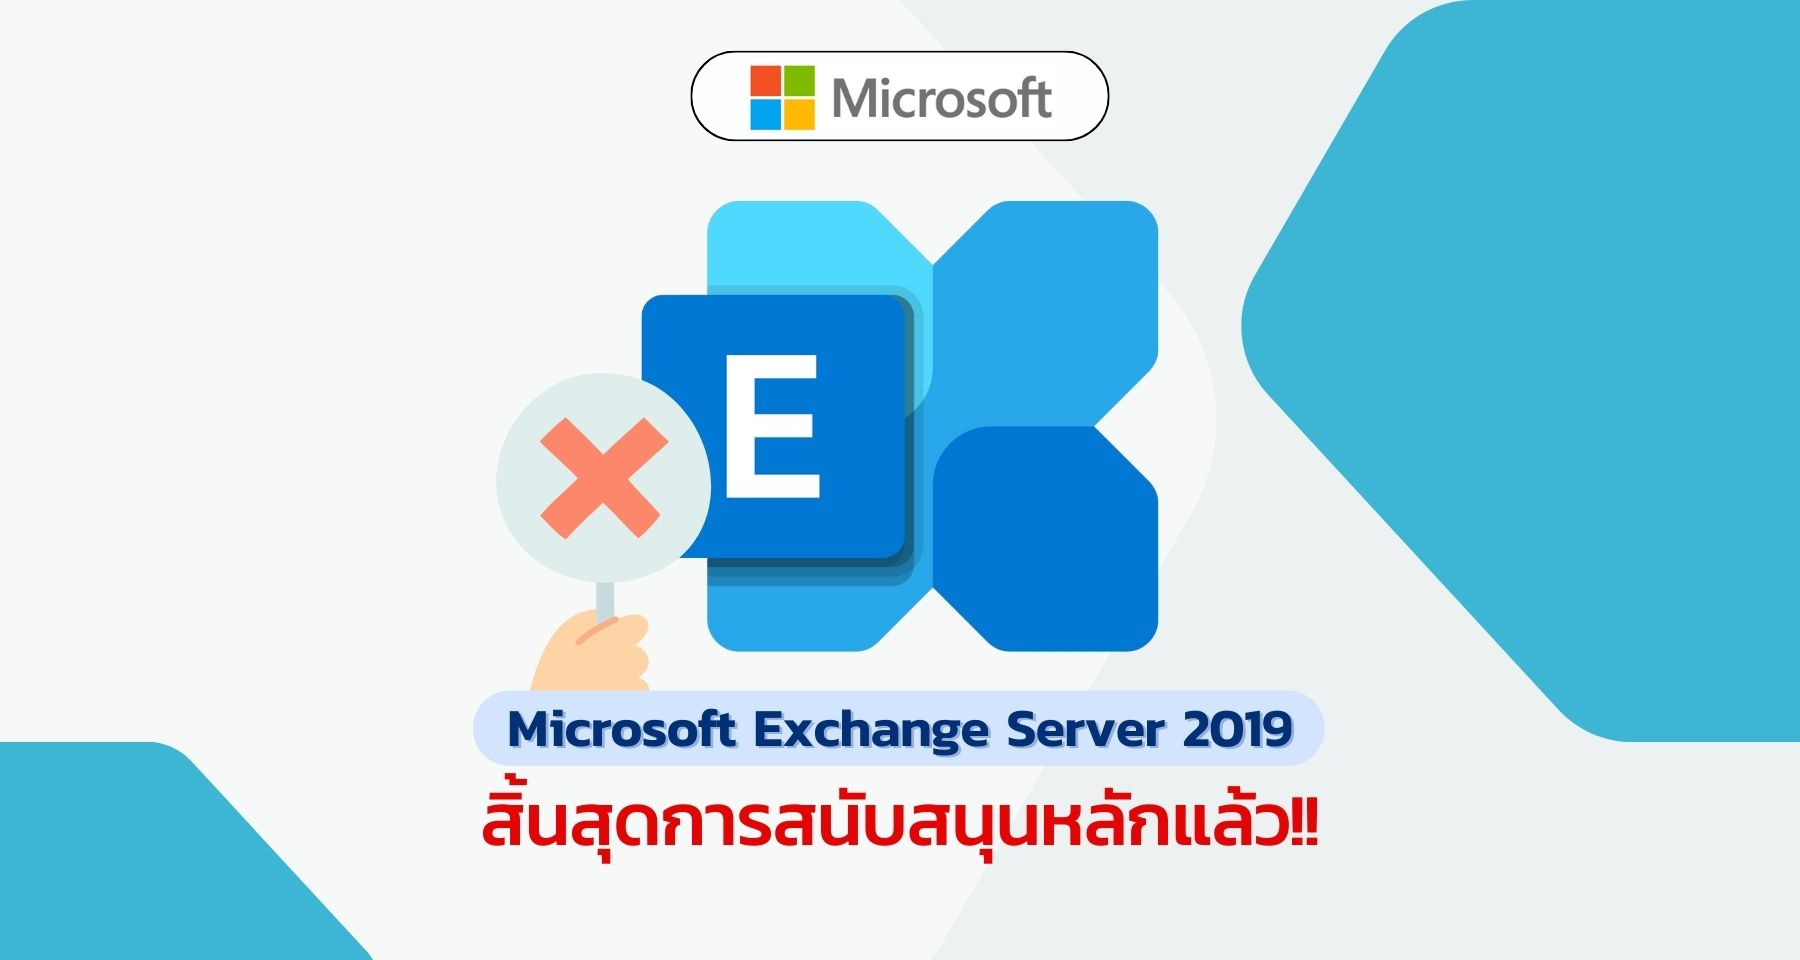 Microsoft Exchange Server 2019 สิ้นสุดการสนับสนุนหลักแล้ว